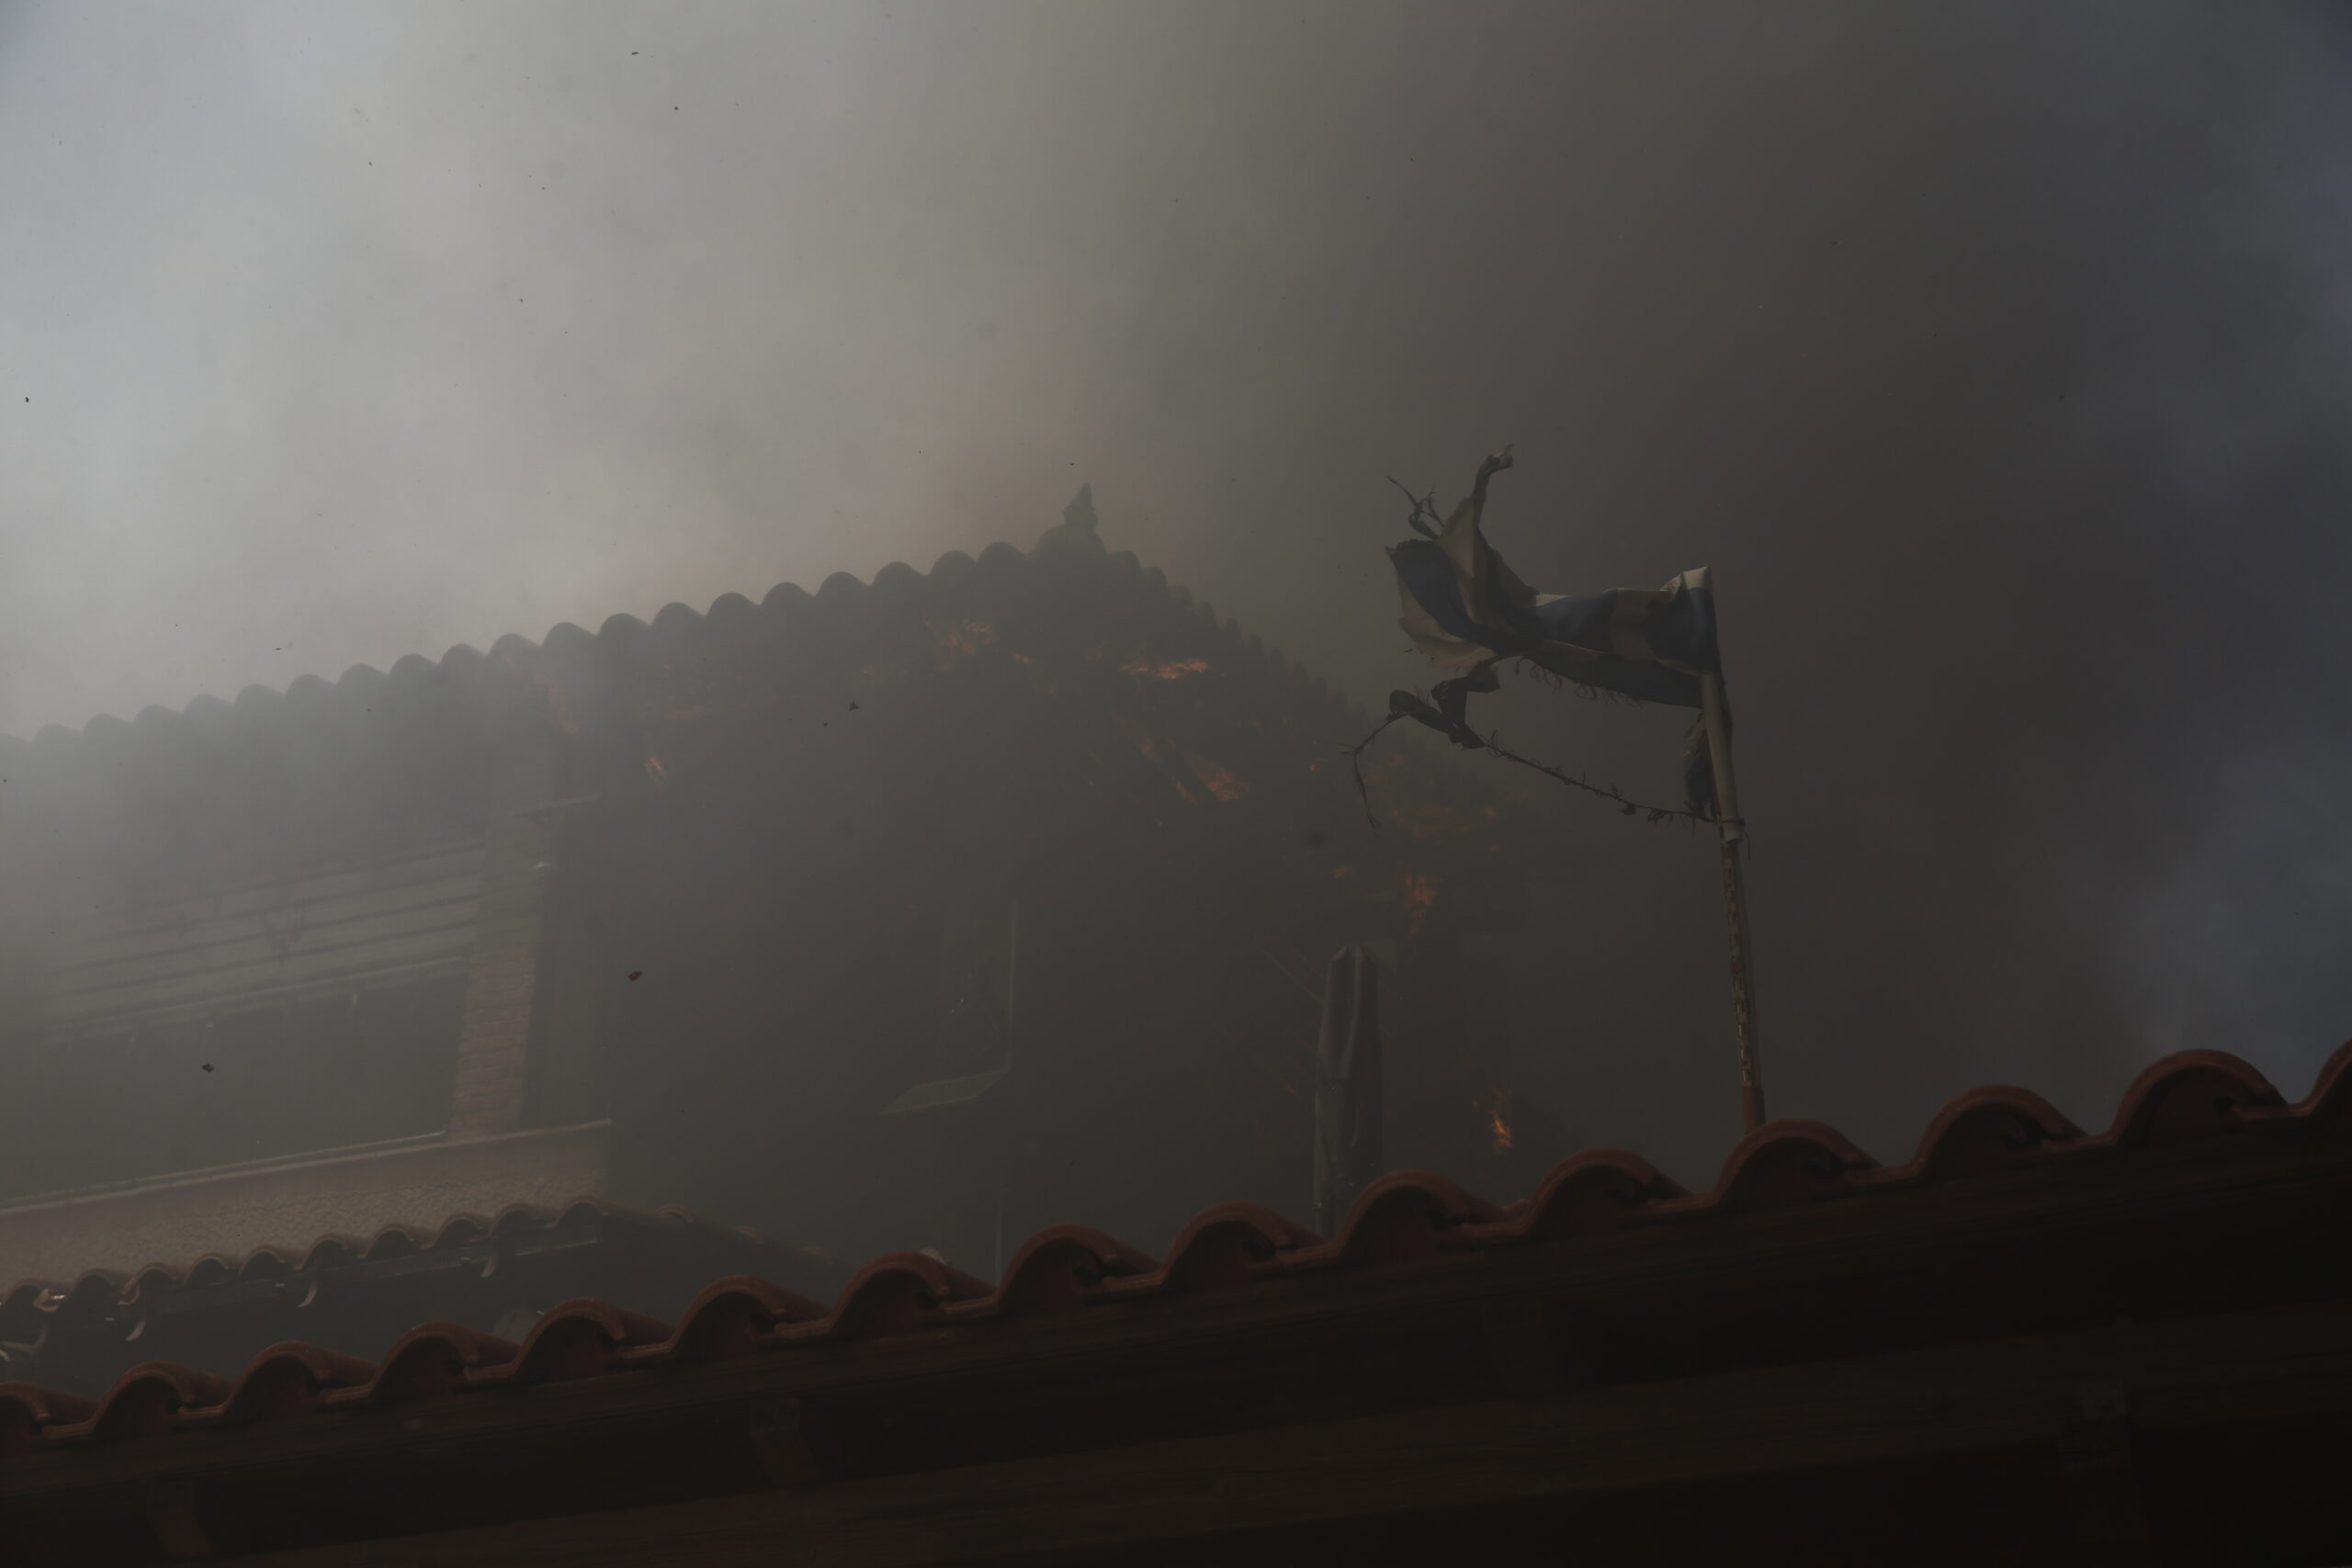 Πύρινη λαίλαπα - Συνεχής ενημέρωση: Καίγονται σπίτια, πλησιάζει η φωτιά πολλές κατοικημένες περιοχές σε Κουβαρά, Ανάβυσσο, Λαγονήσι